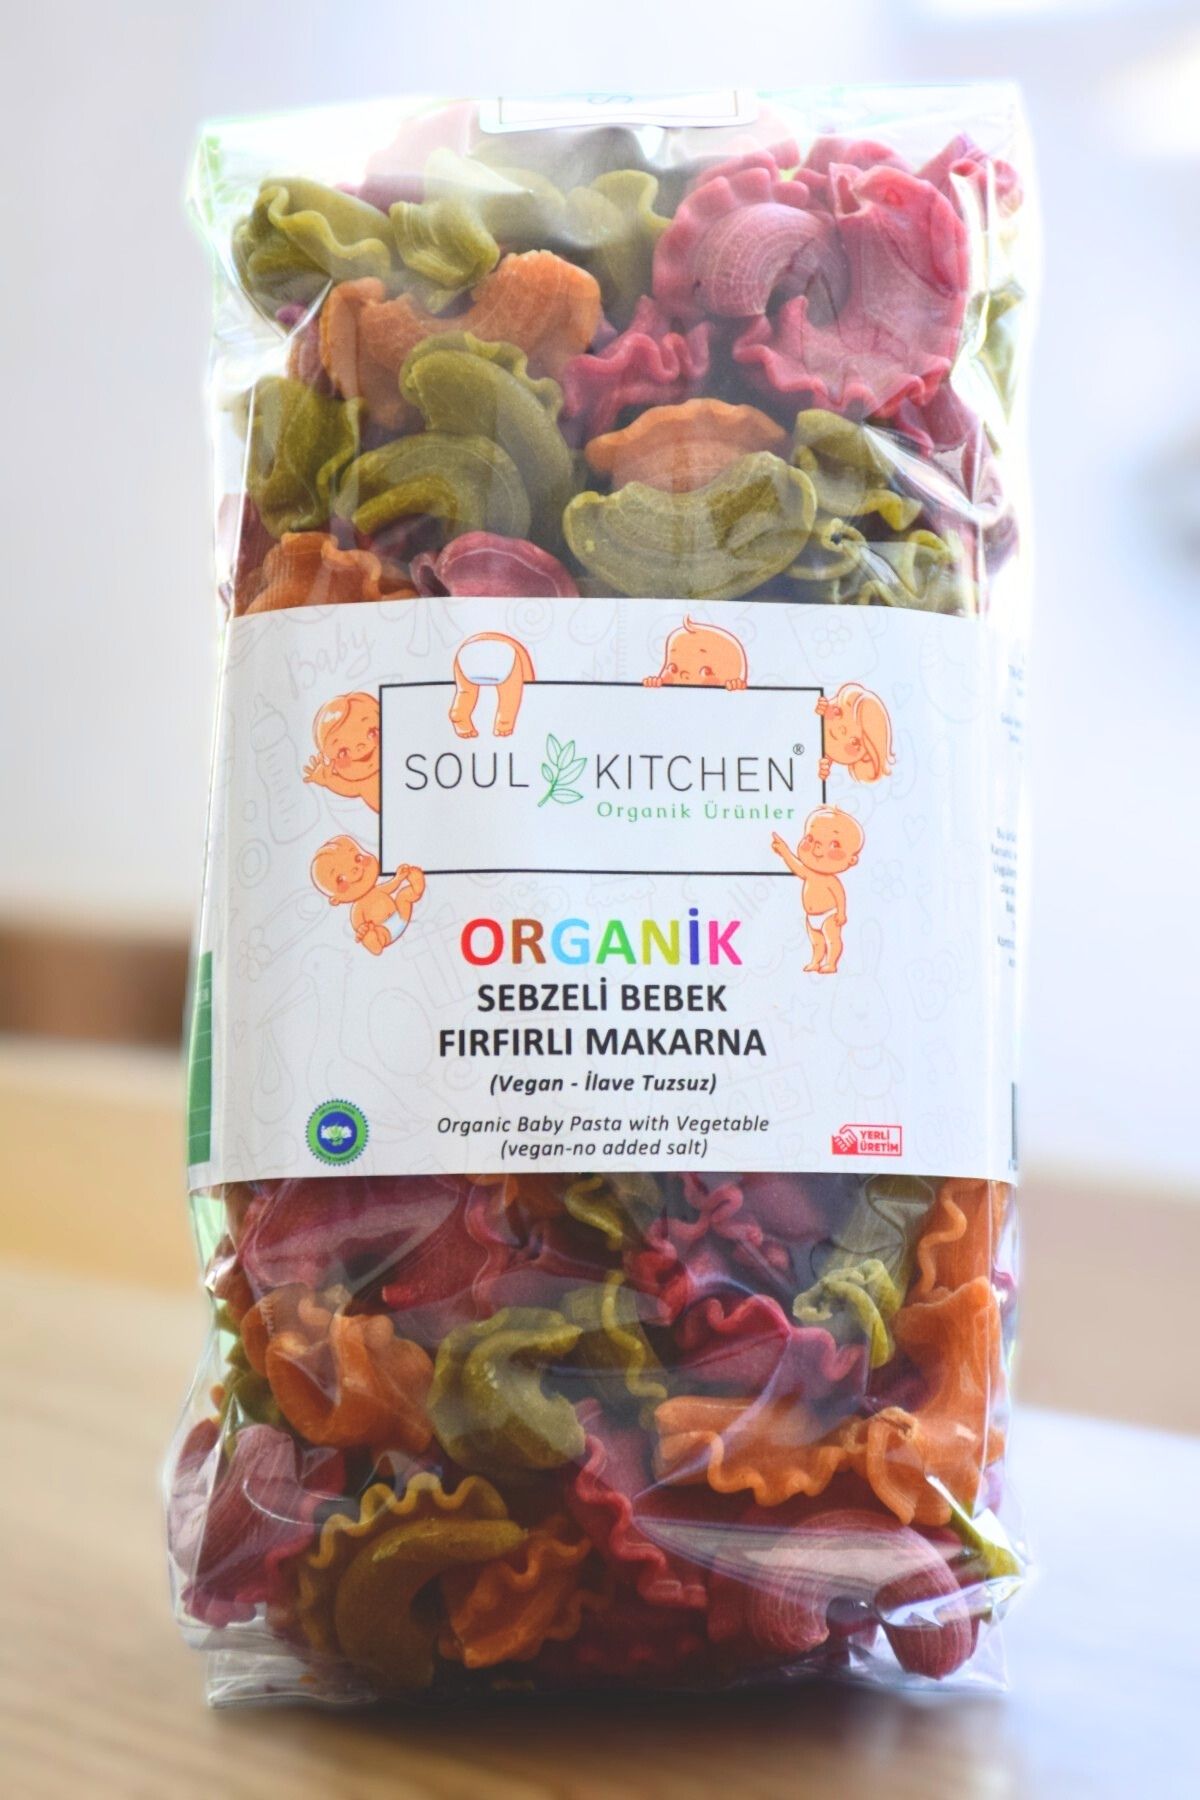 Soul Kitchen Organik Ürünler Organik Sebzeli Bebek Fırfırlı Makarna 250gr (vegan) (ilave tuzsuz)